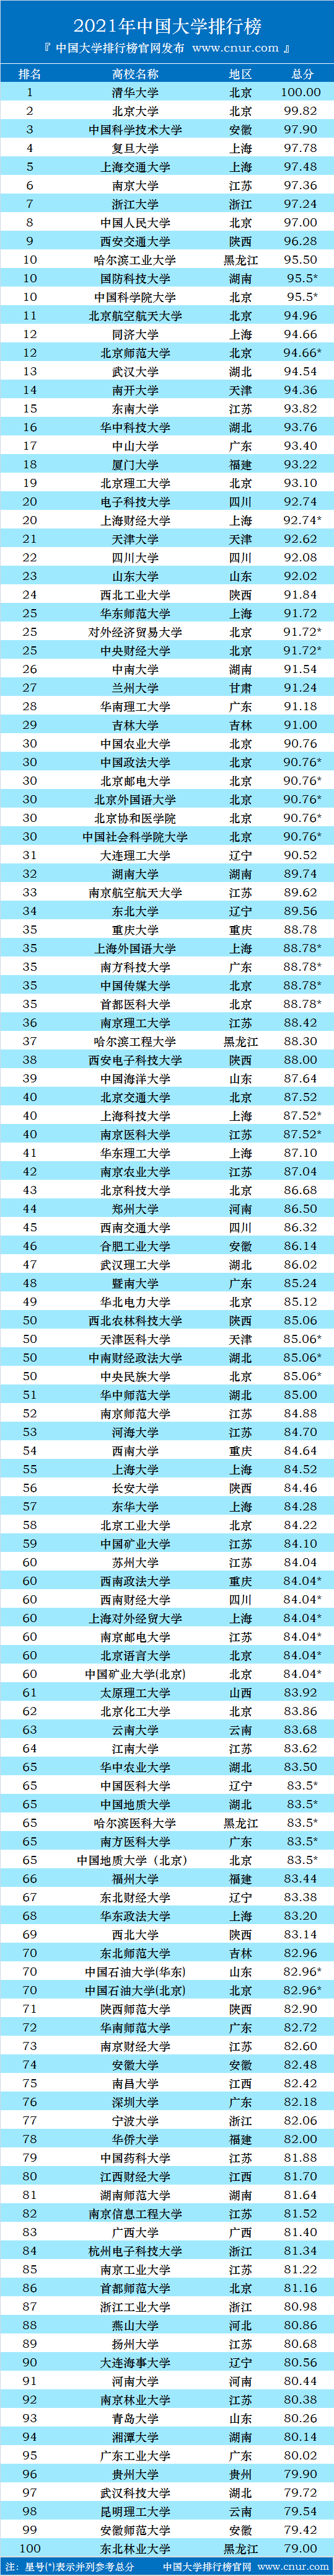 北京大学排行榜_2021年中国大学排行榜出炉,清华第一,北大第二,湖南5大学入榜